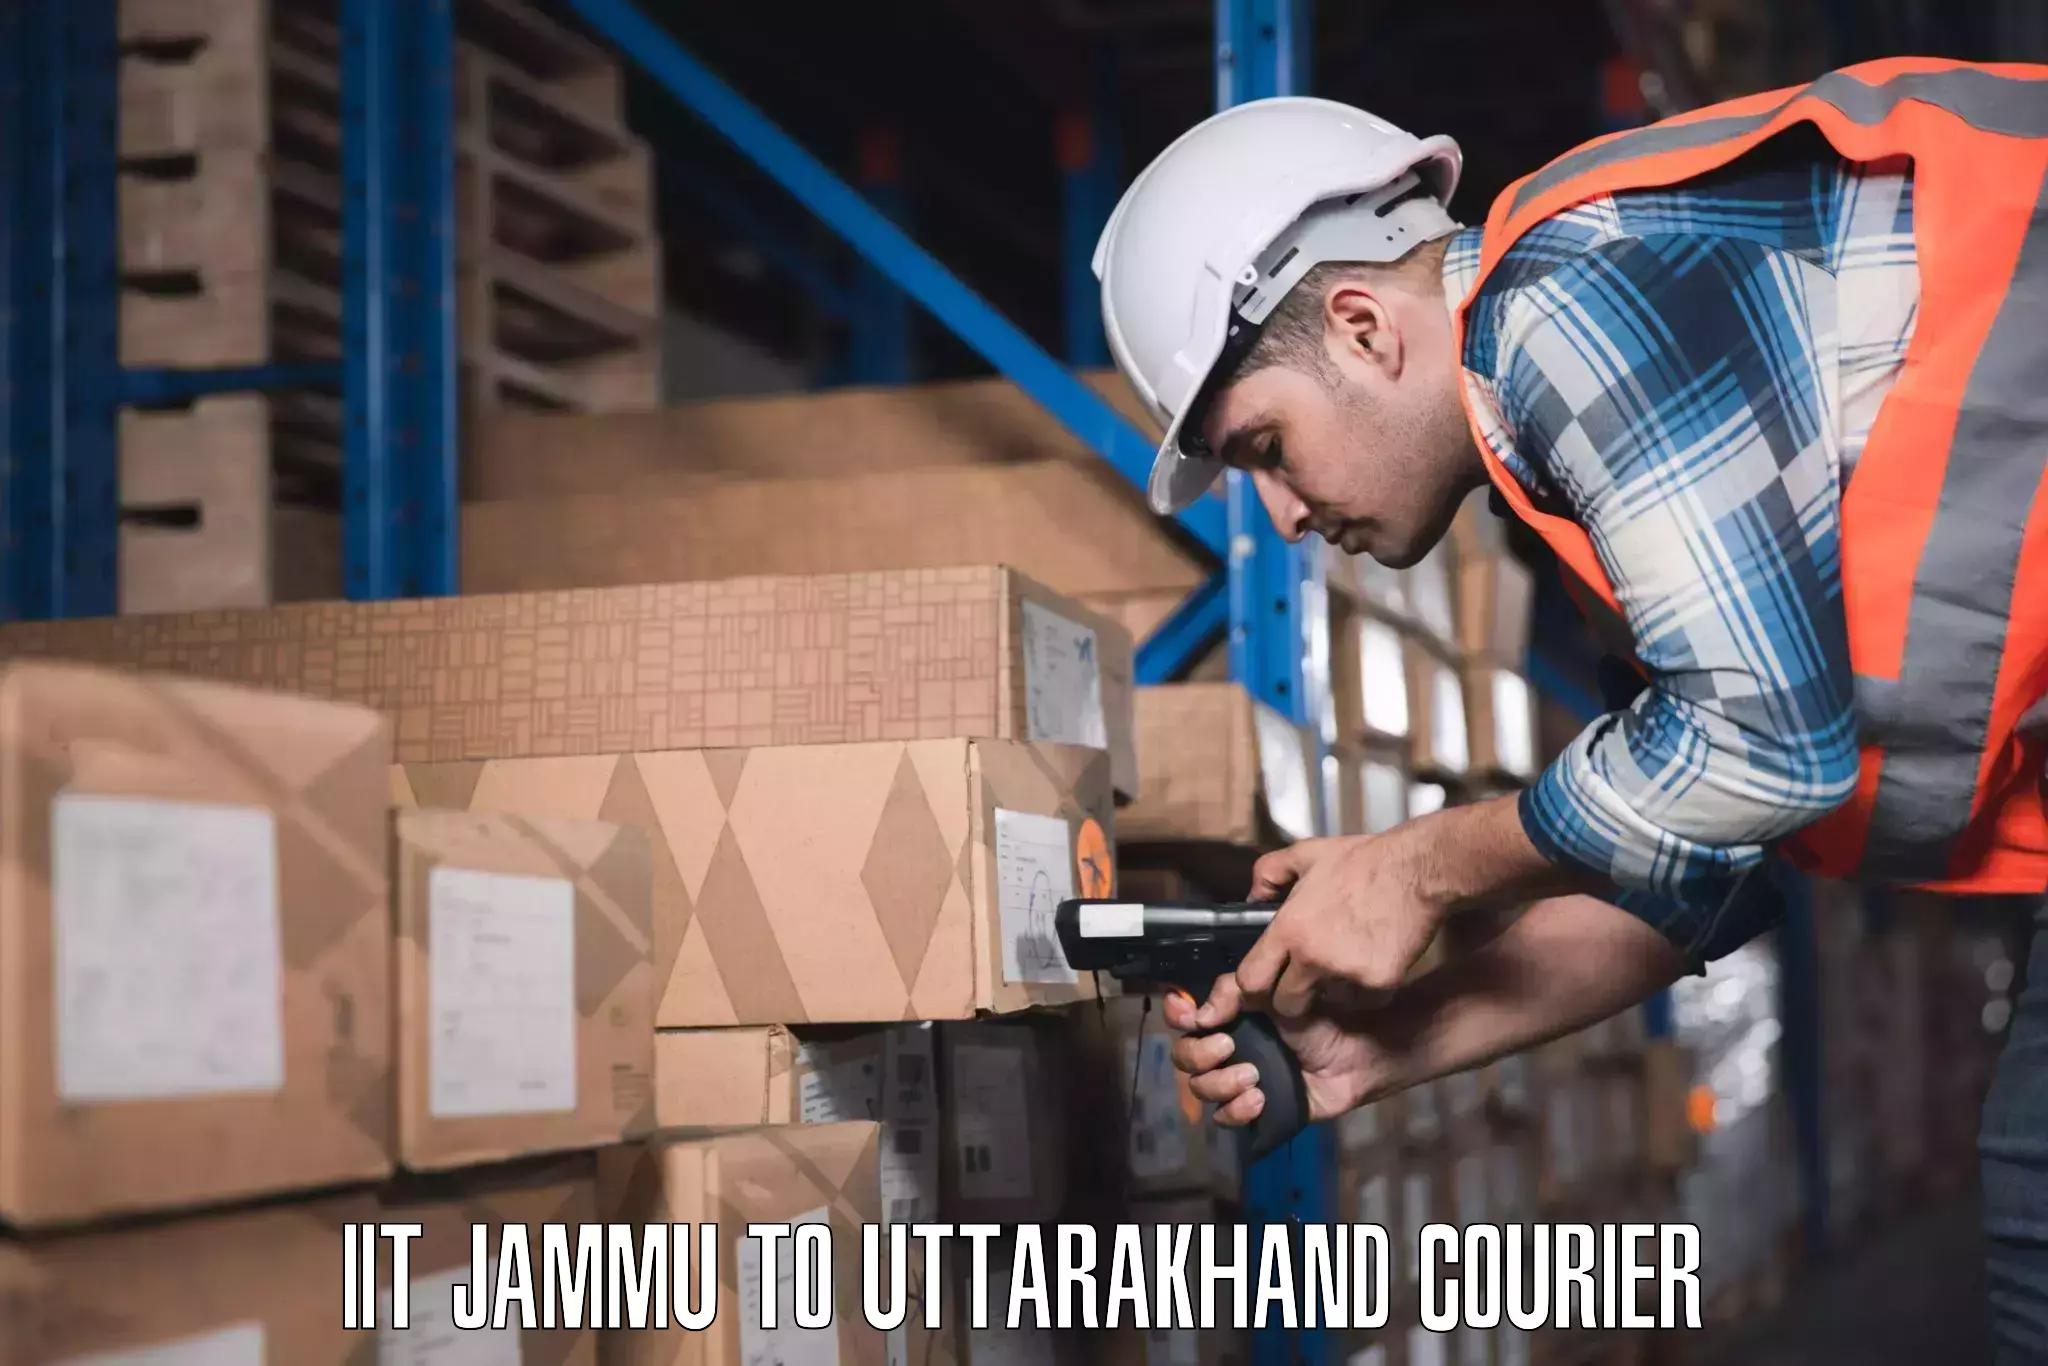 Luggage delivery optimization IIT Jammu to Joshimath